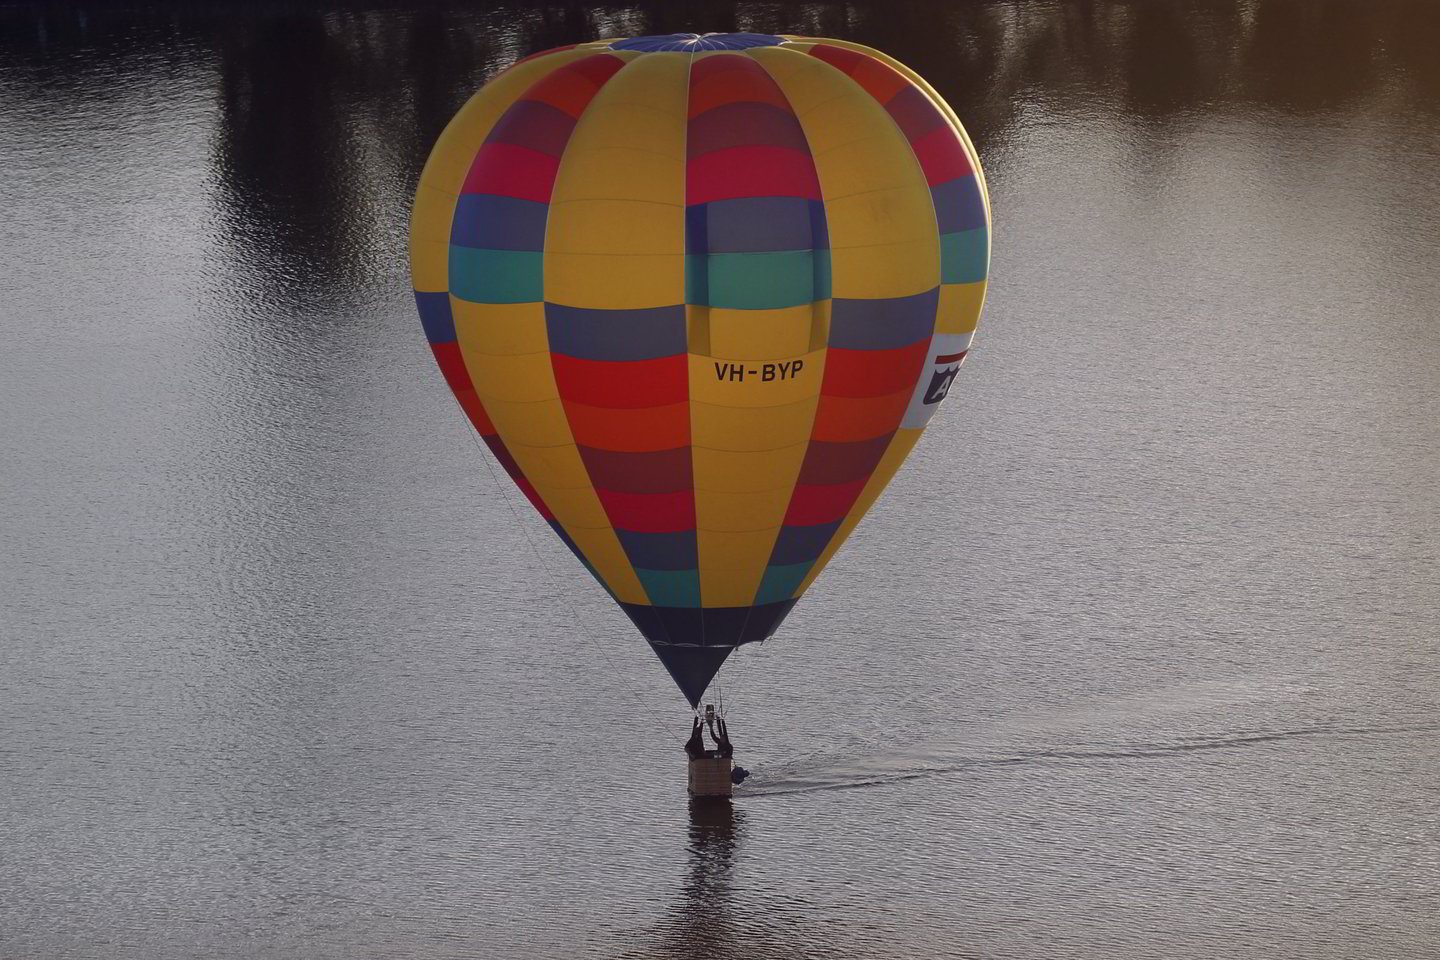  Oro balionas padarė avariją.<br> Reuters/Scanpix nuotr.